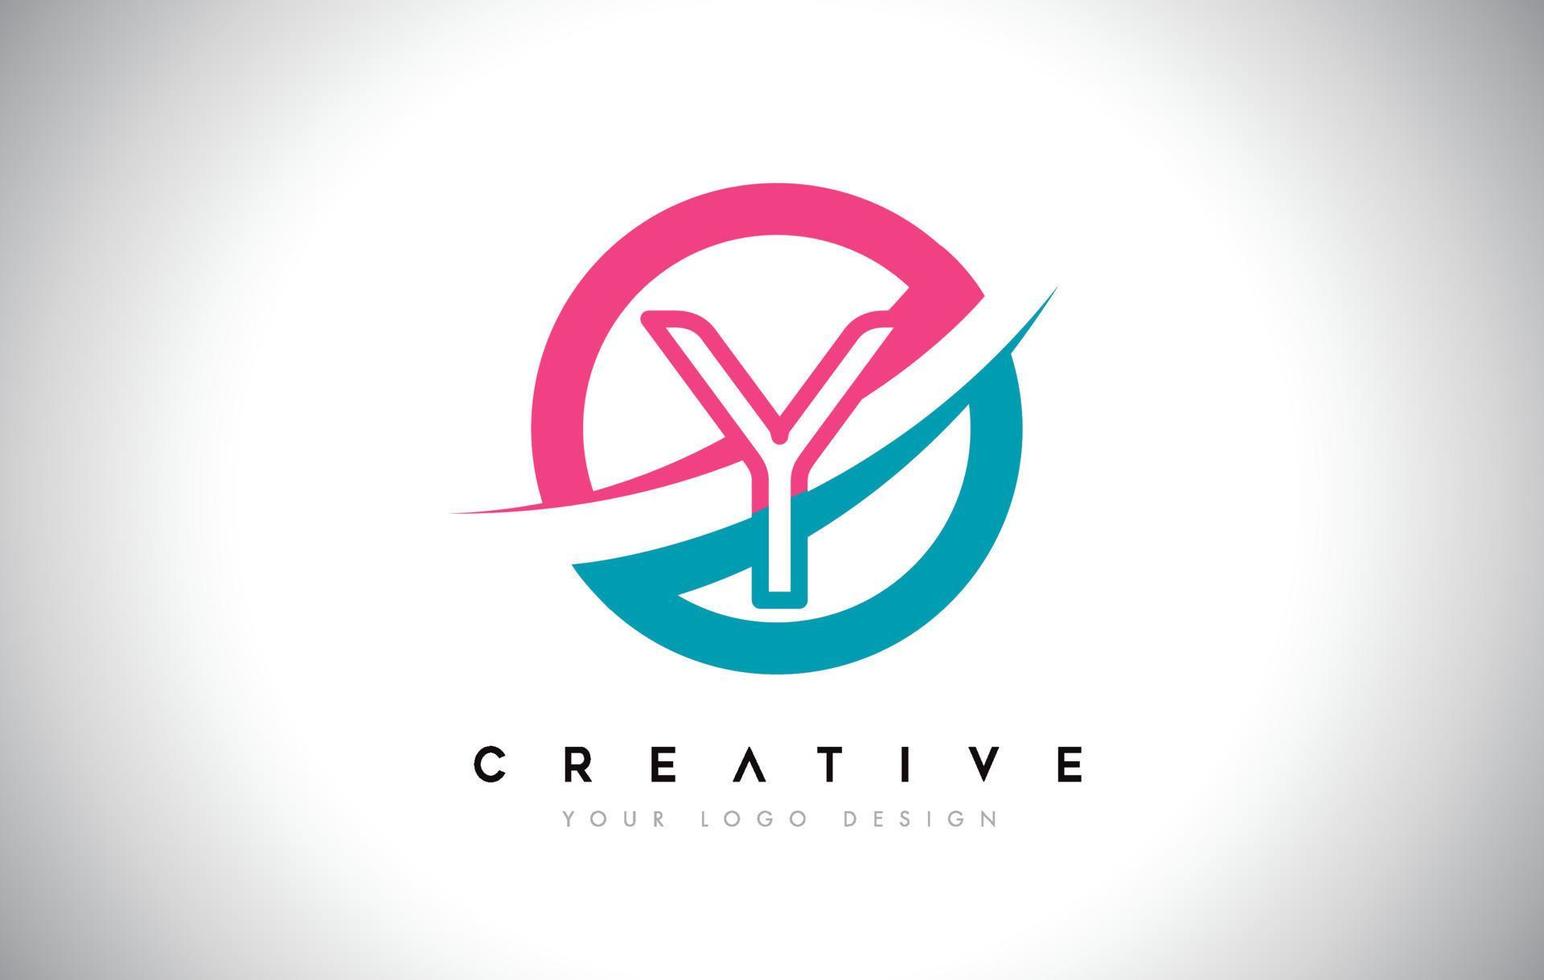 y ontwerp logo letterpictogram met cirkel en swoosh ontwerp vector en blauw roze kleur.